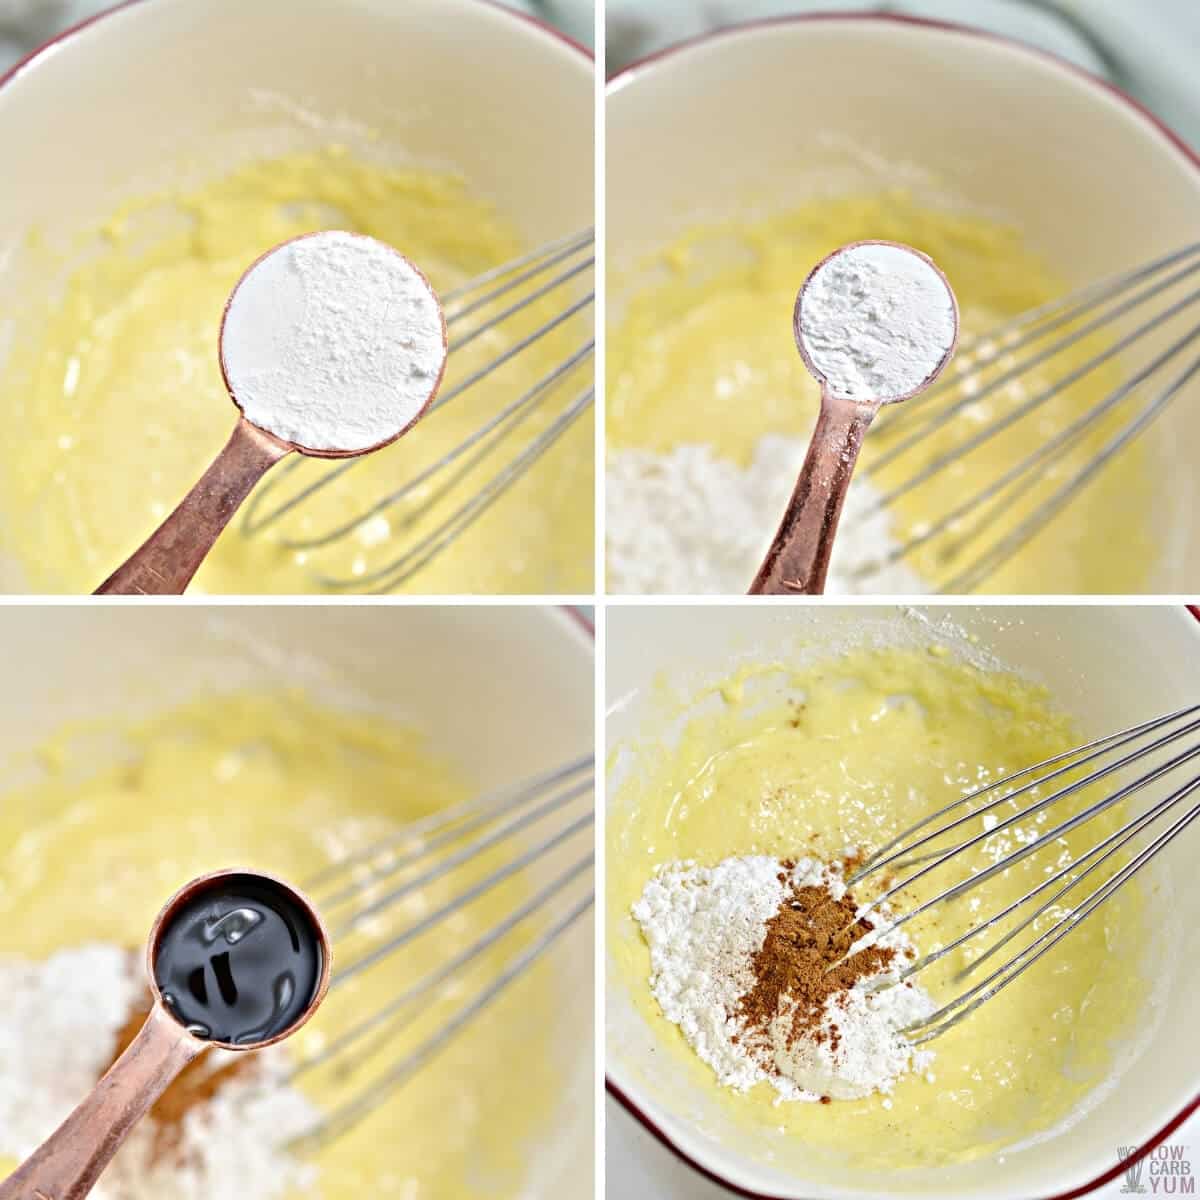 adding ingredients to make pancake batter